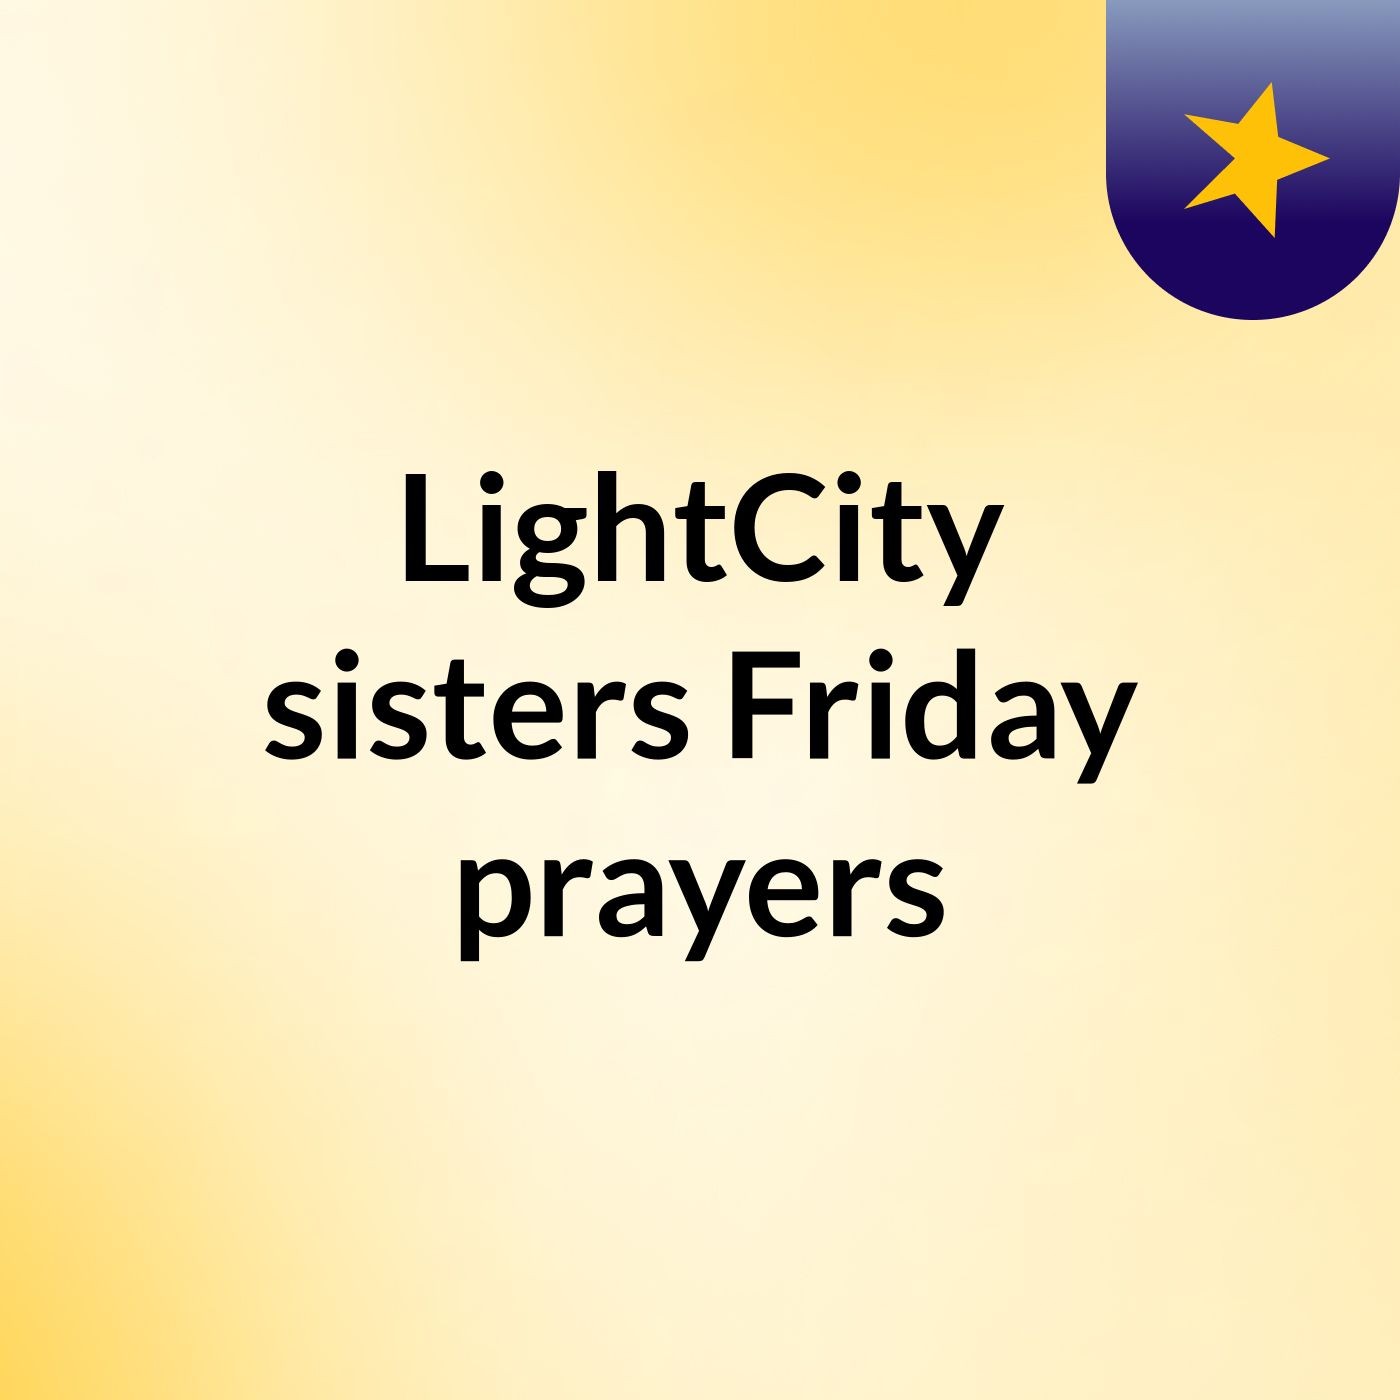 Episode 4 - LightCity sisters Friday prayers